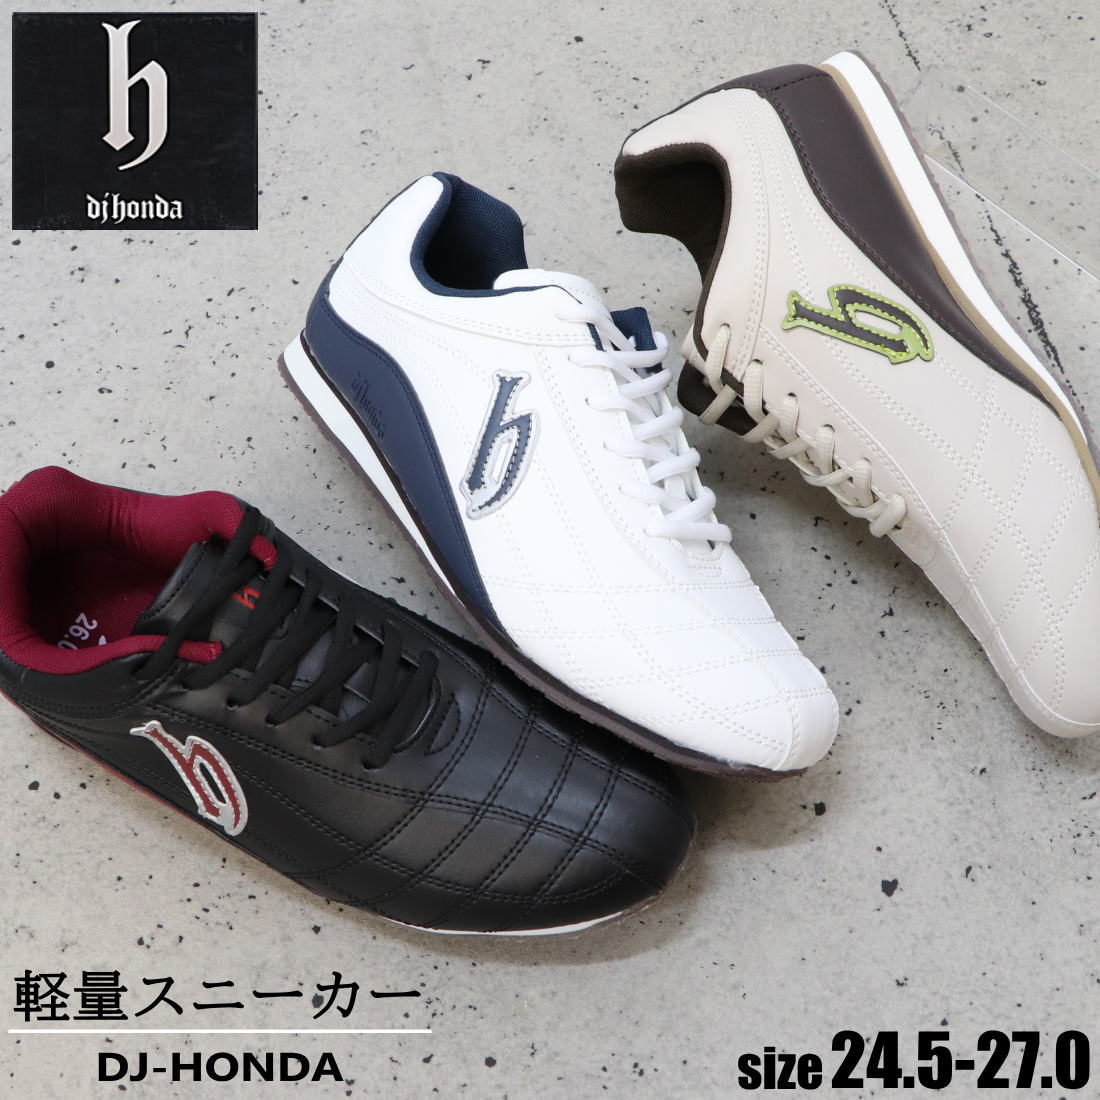 運動靴 【DJ-HONDA】 スニーカー/スポーティーカジュアルシューズ★DJホンダ DJHONDA☆ dj202